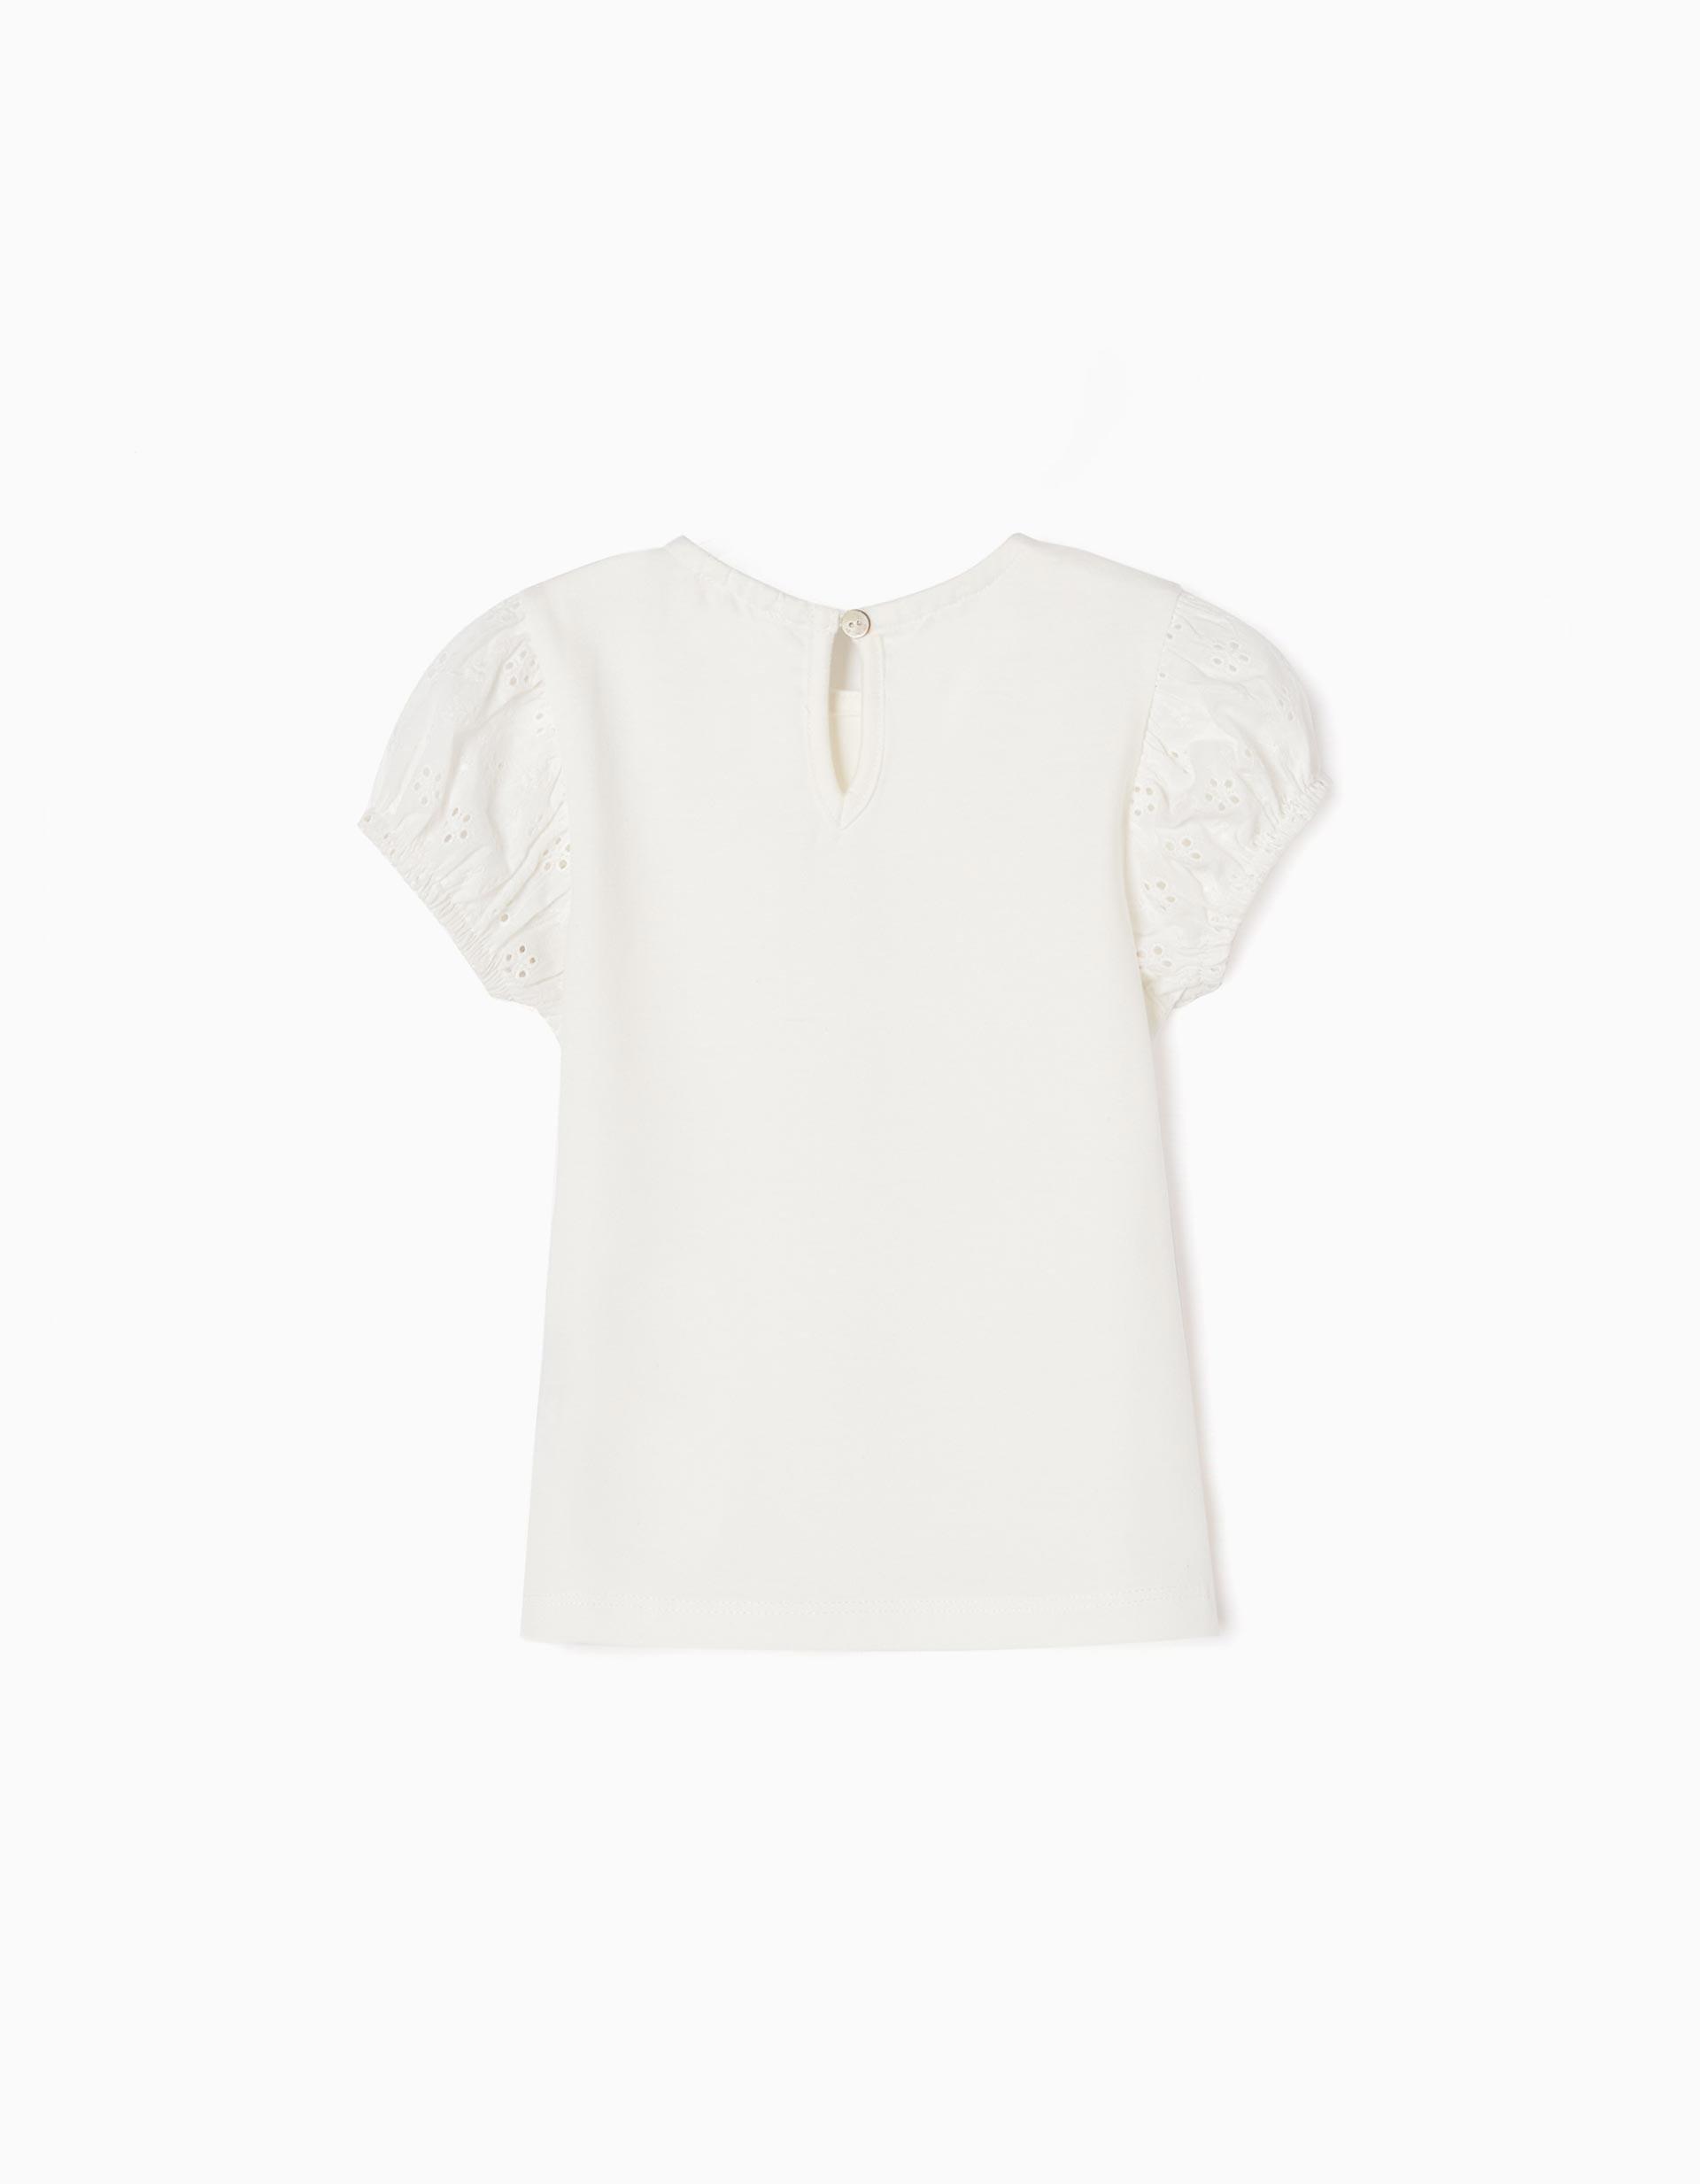 Gant - White Frilly T-Shirt, Baby Girls